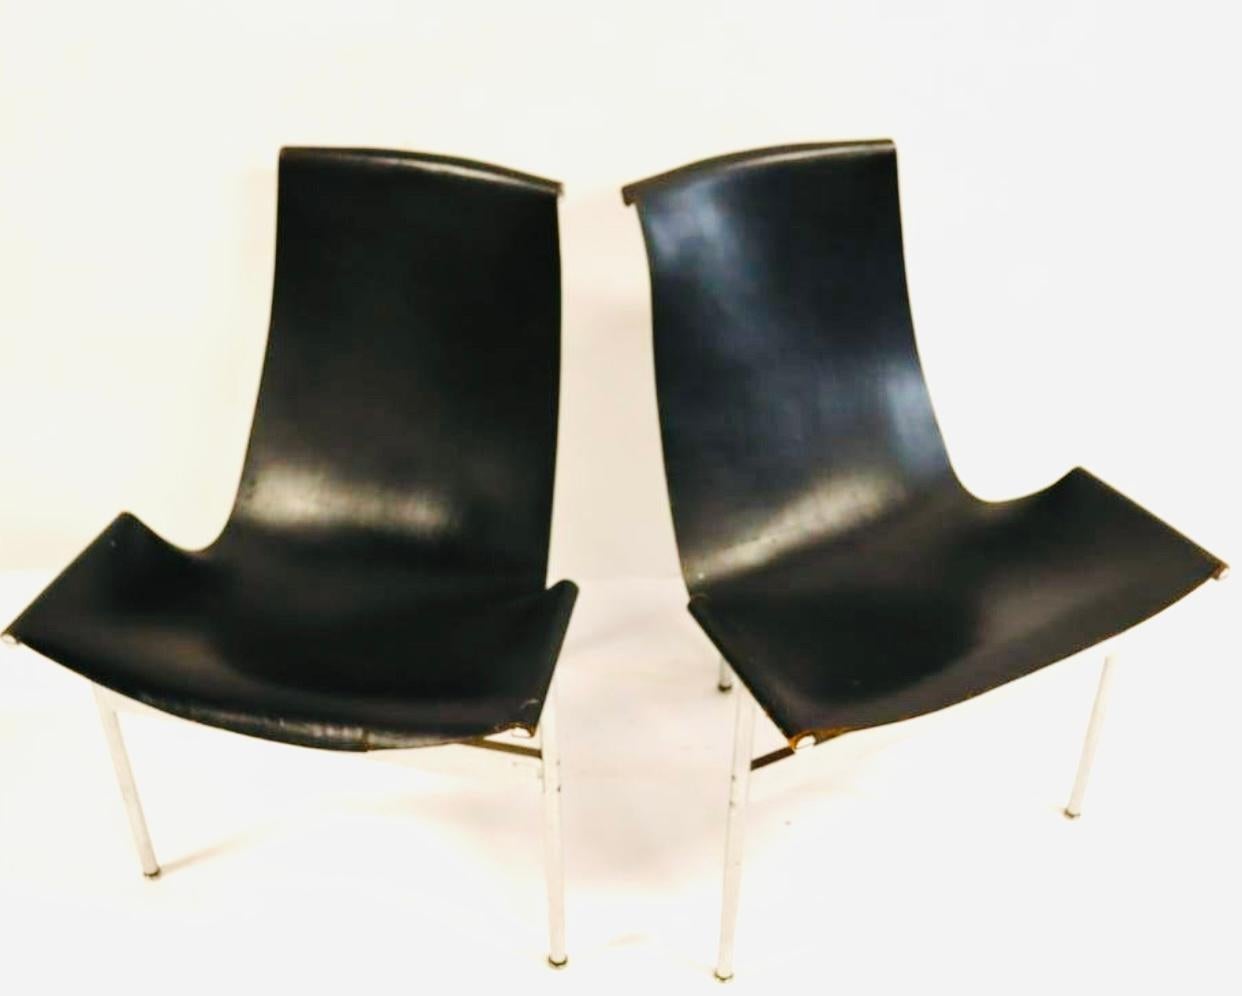 Zwei ikonische T-Sessel aus dickem Sattelleder und verchromten Stahlrahmen von Katavolos, Littell und Kelly für Laverne International. Ein sehr fortschrittliches Design für das Jahr 1952, vor allem wenn man bedenkt, was der Rest der Designwelt